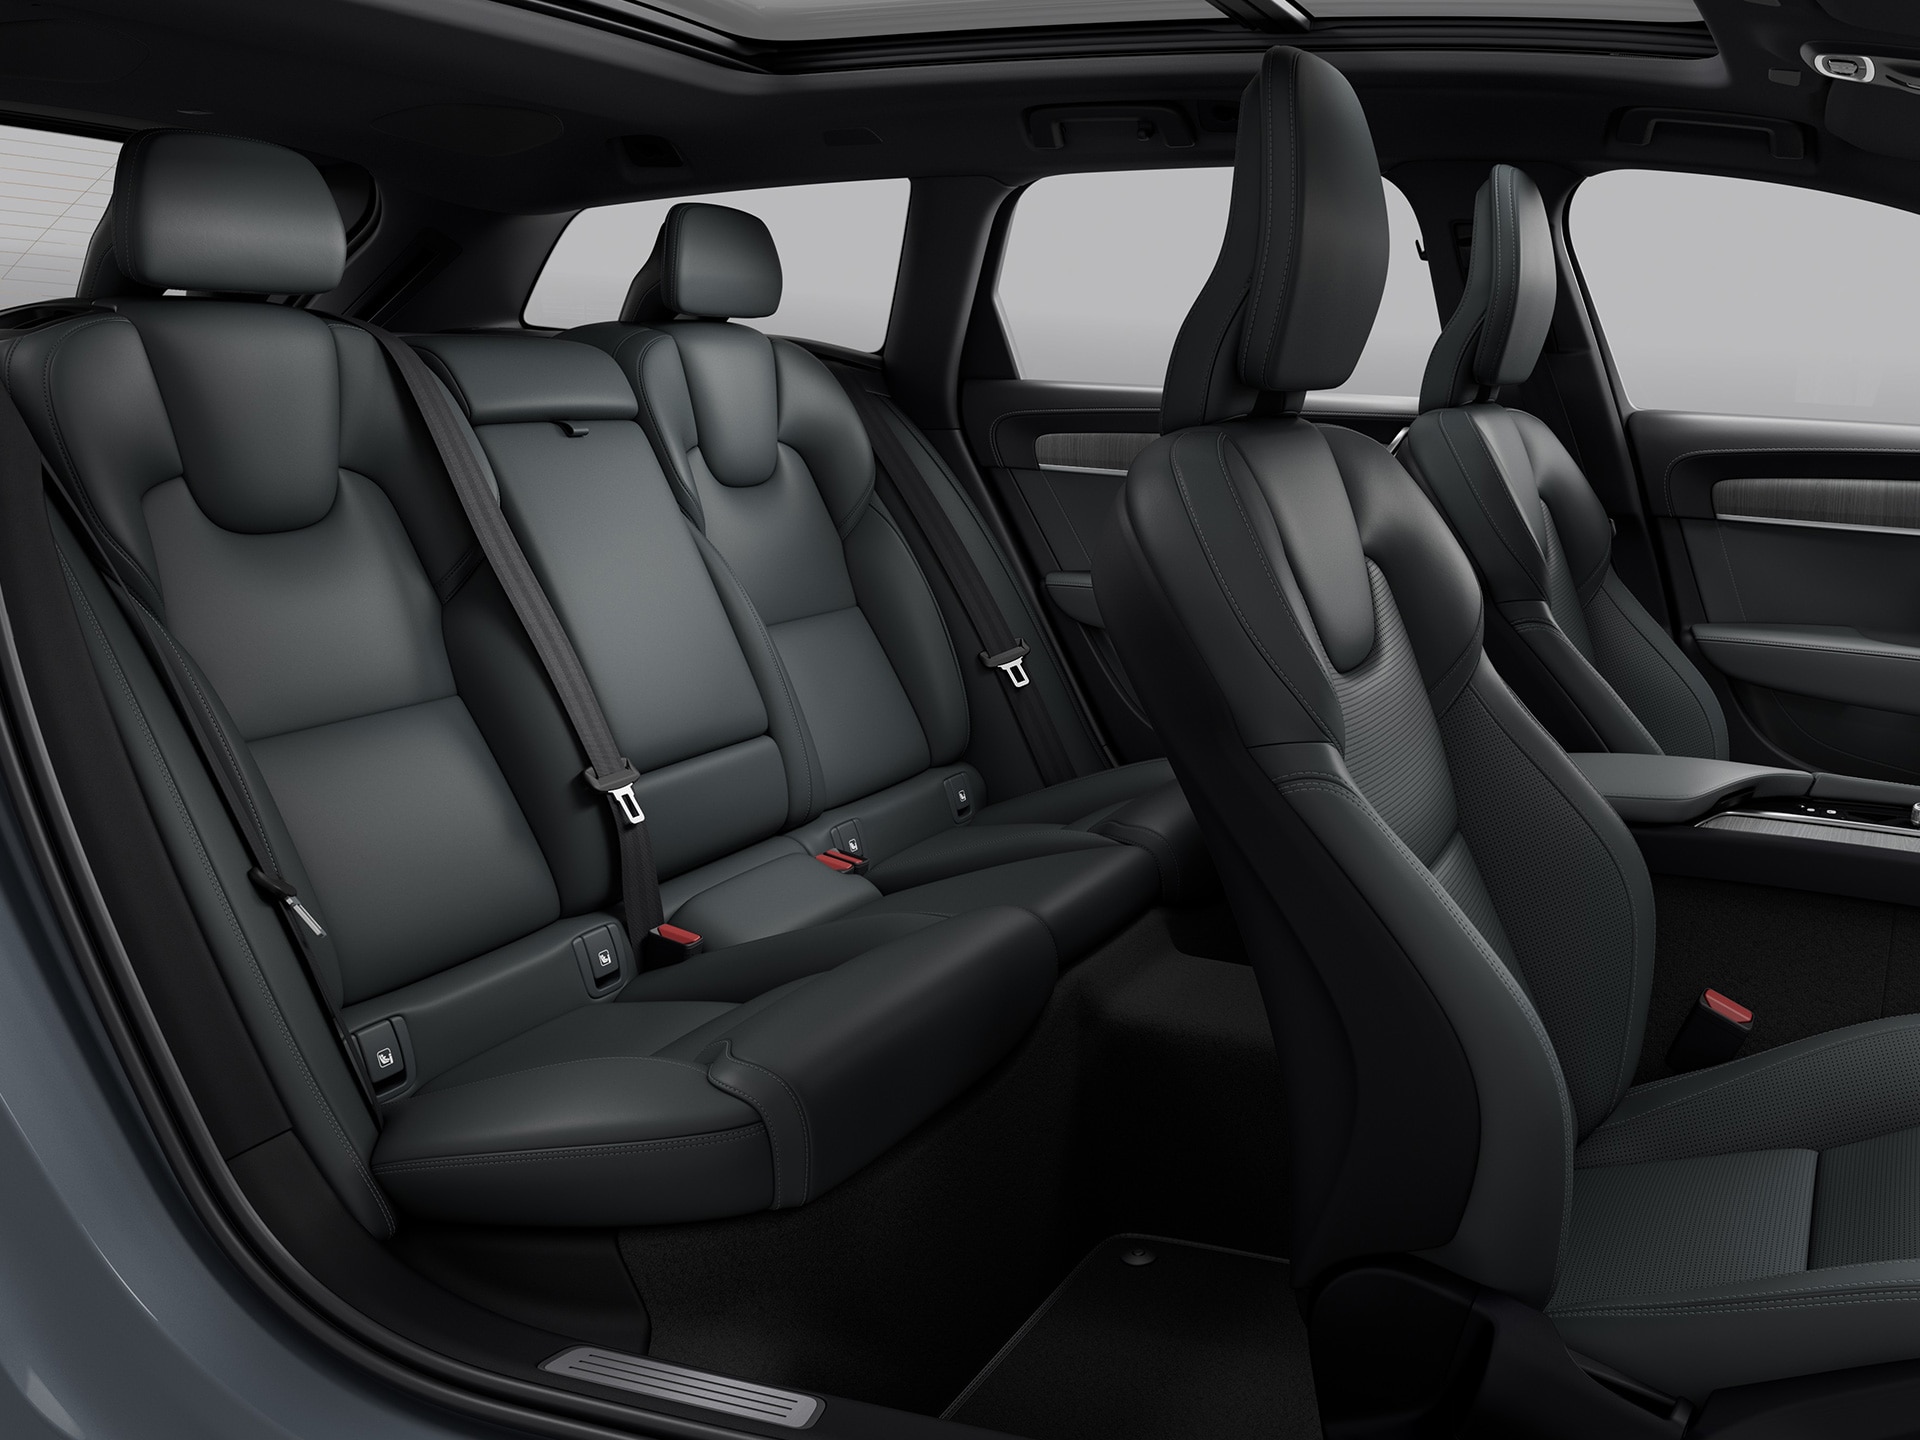 沃尔沃 V90 Cross Country 提供多功能载物空间、不同座椅选择和宽敞设计。